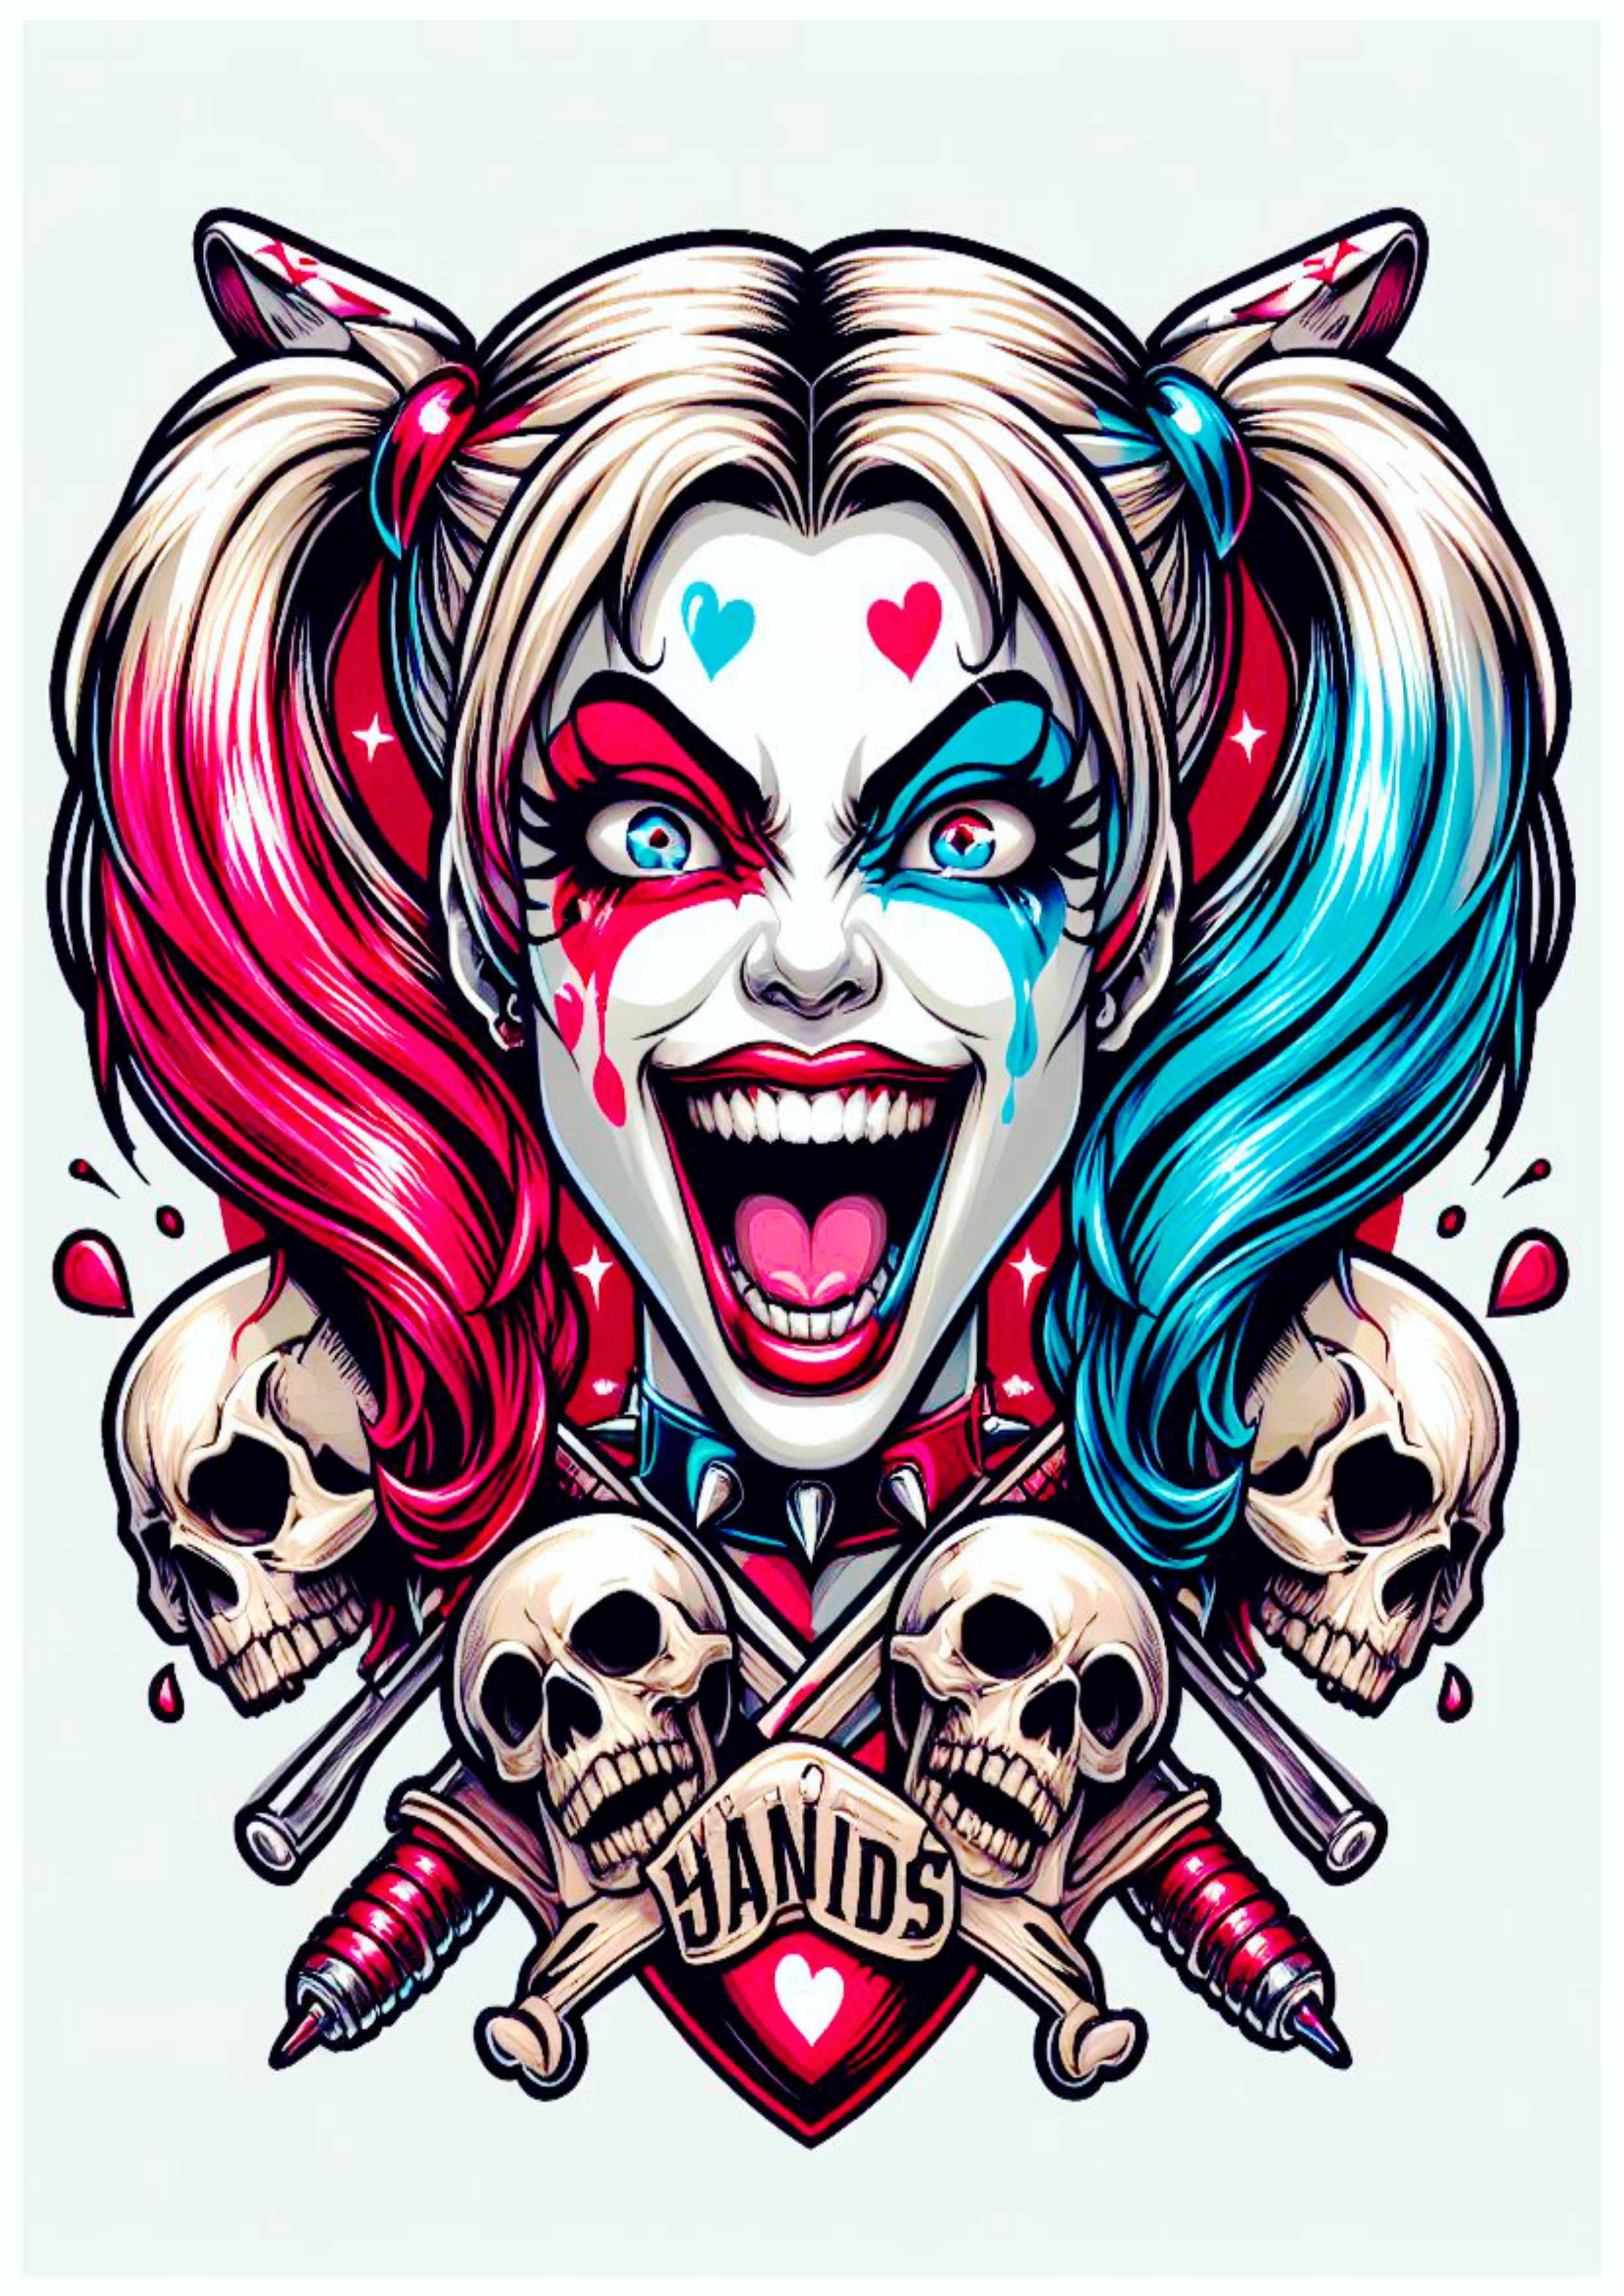 Arlequina desenho colorido para tatuagem psicodélica com caveiras Harley Quinn artes visuais png